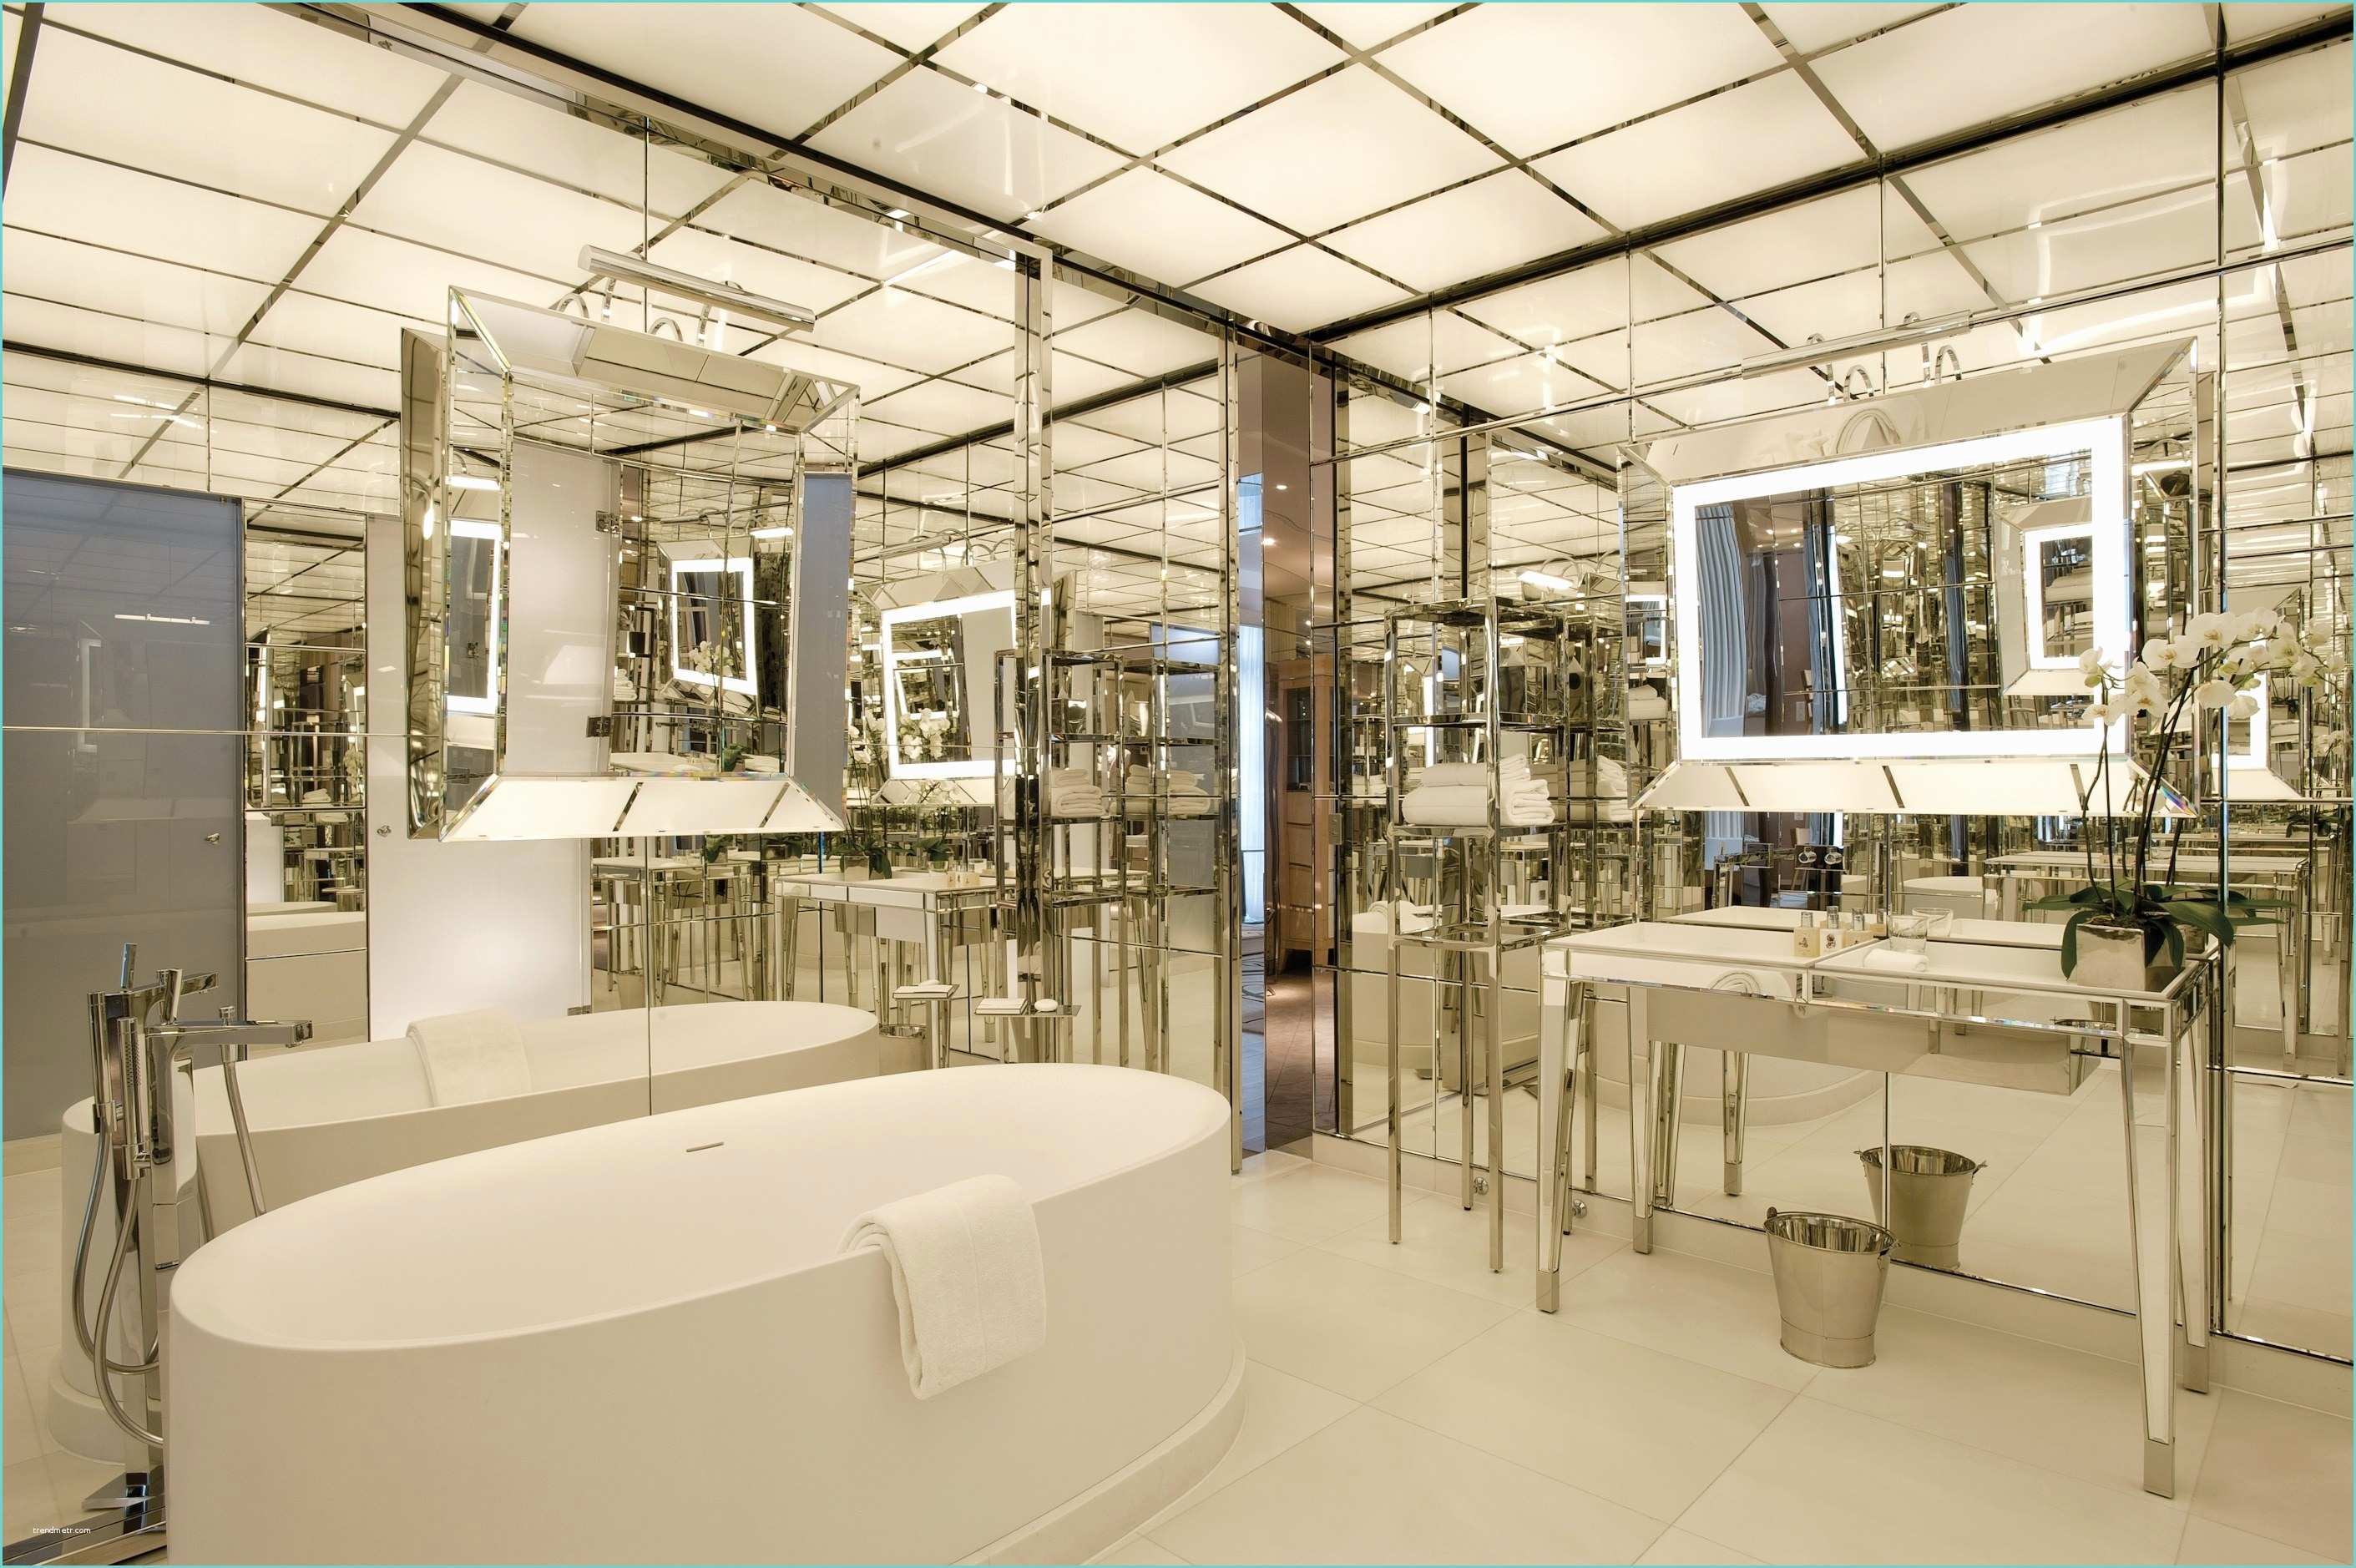 Les Plus Belles Salles De Bain Du Monde the World S Most Luxurious Hotel Bathrooms S